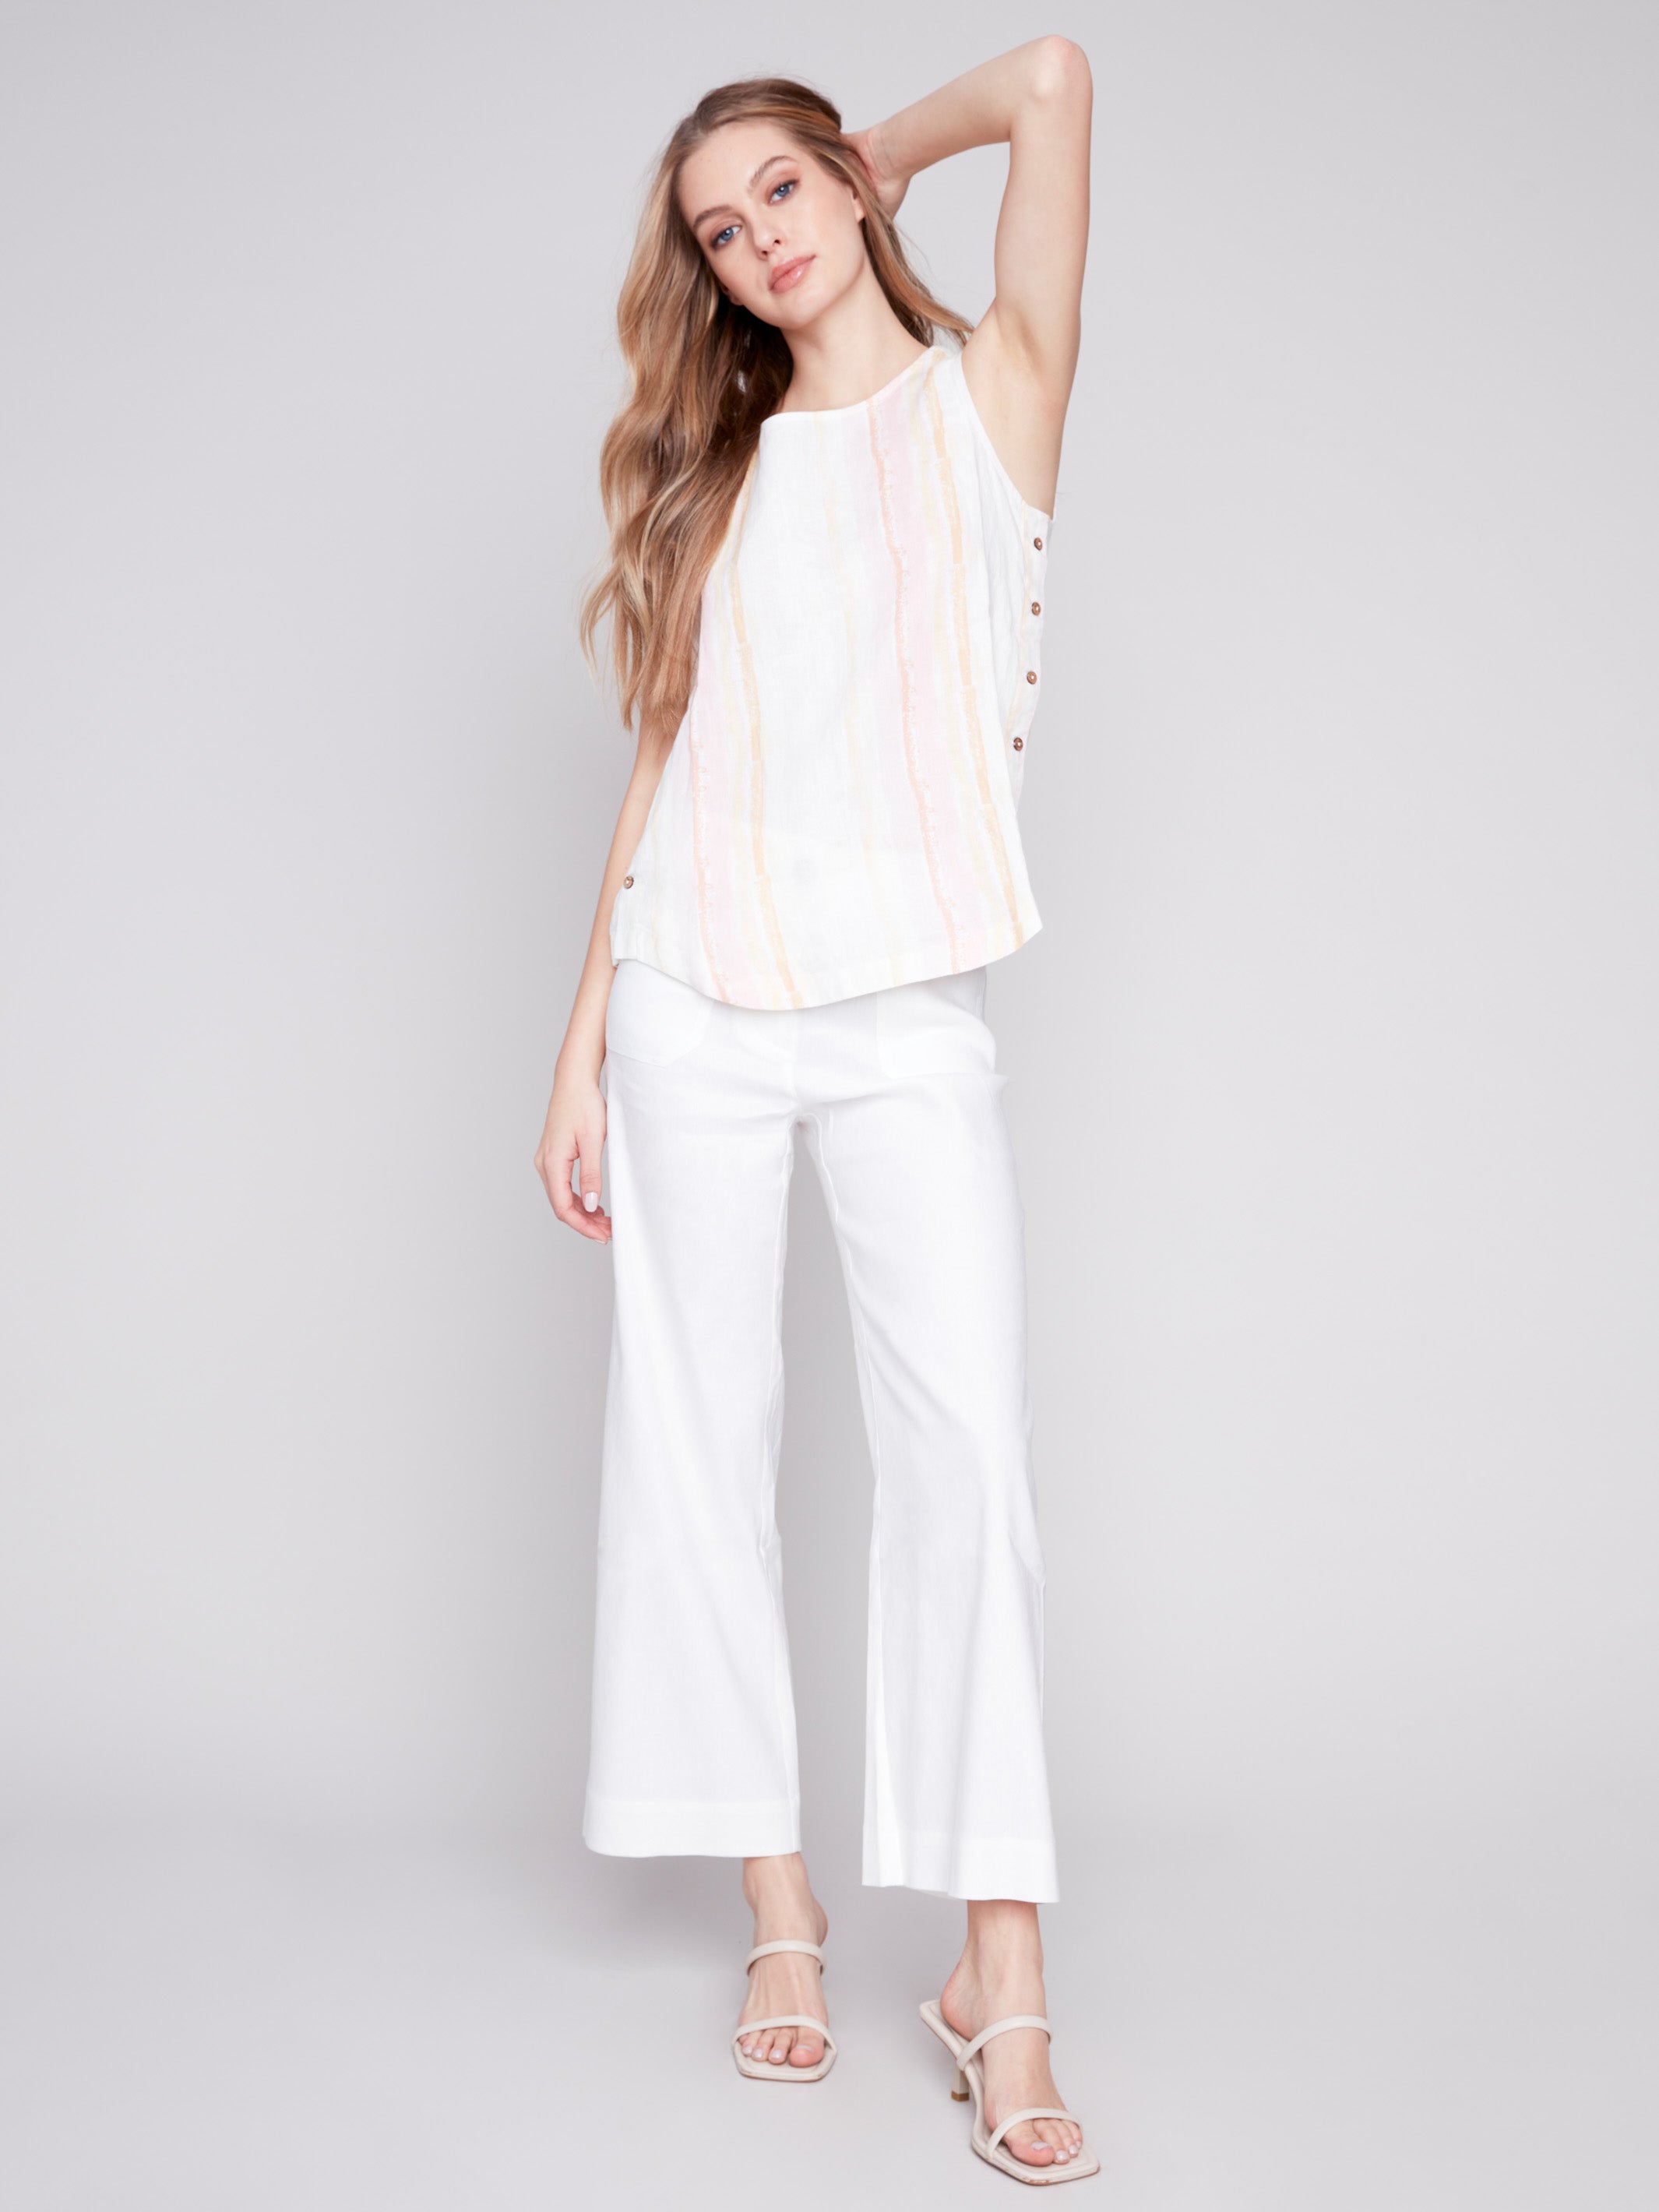 Charlie B - Women's Linen Clothing - Linen Dresses, Linen Pants, Linen Jackets, Linen Shirts & Blouses